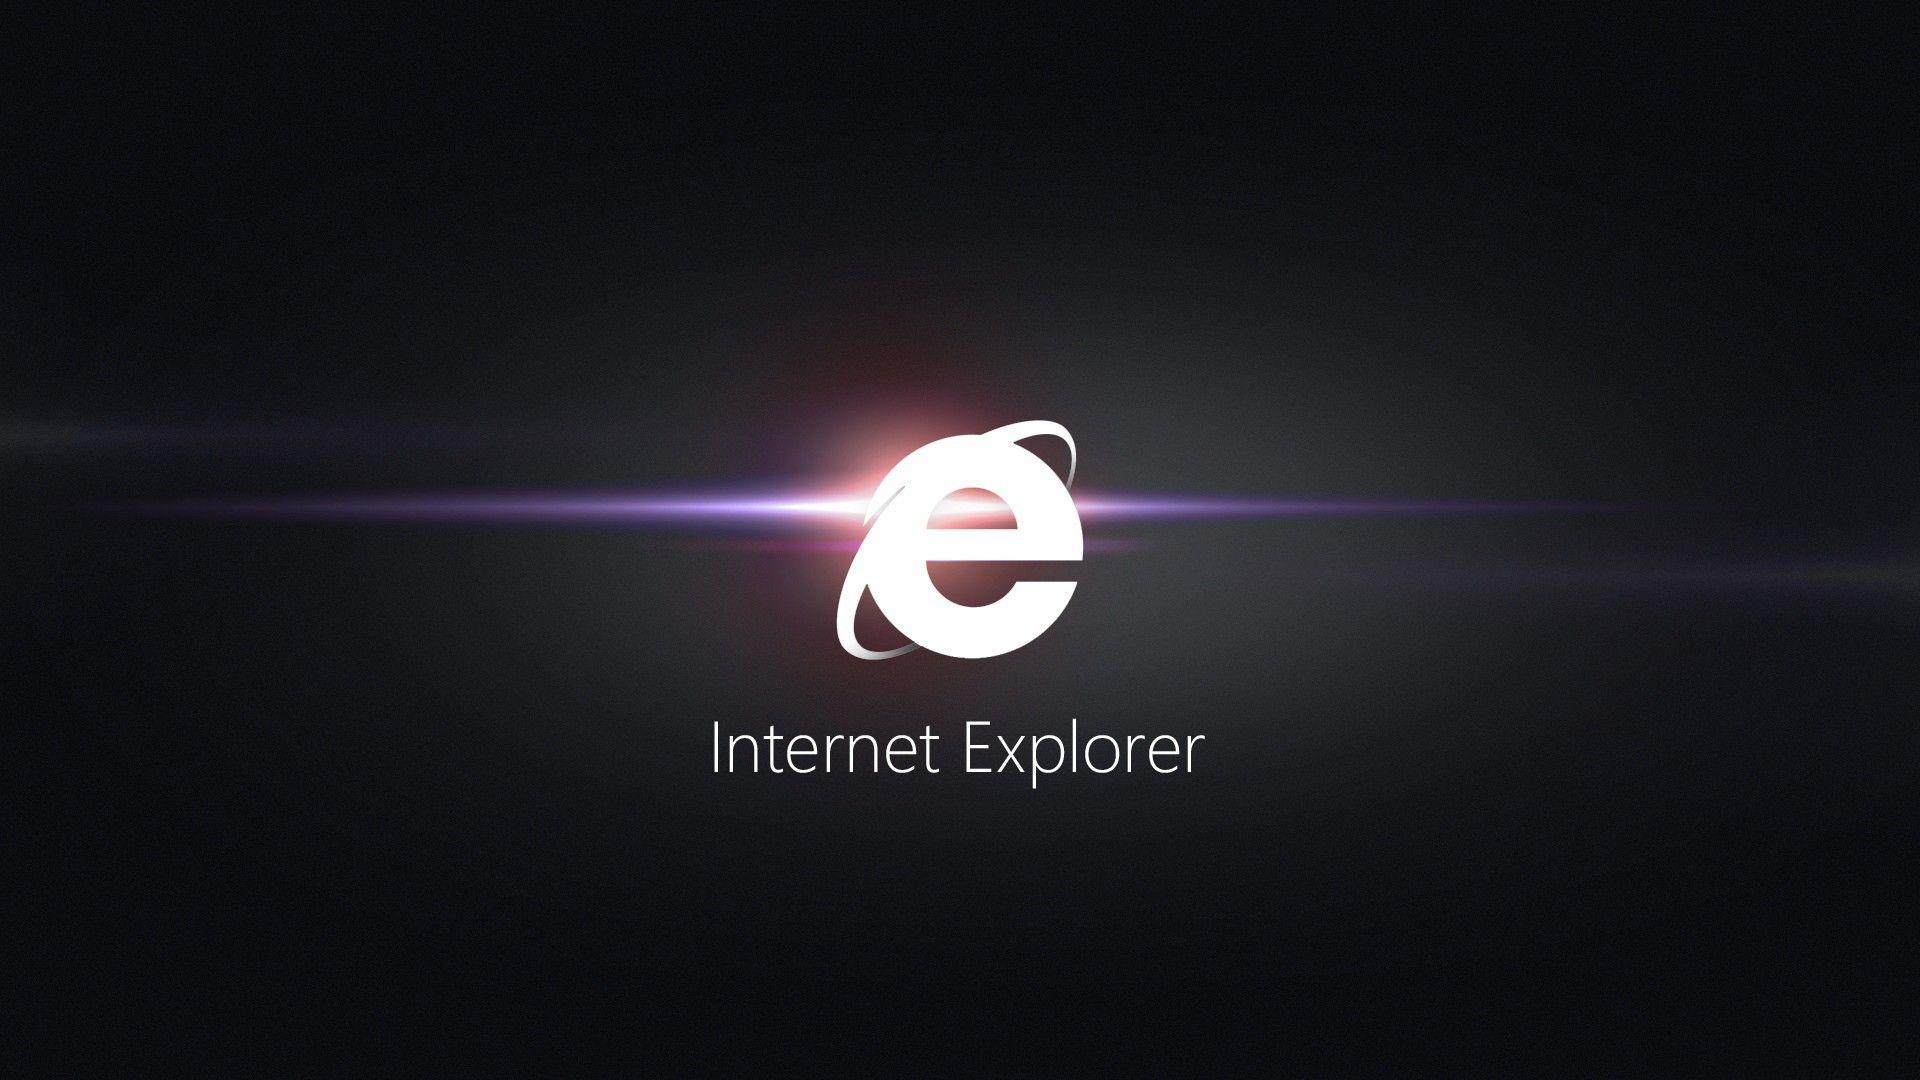 Internet Explorer Image Best HD Wallpaper Wallpaper computer